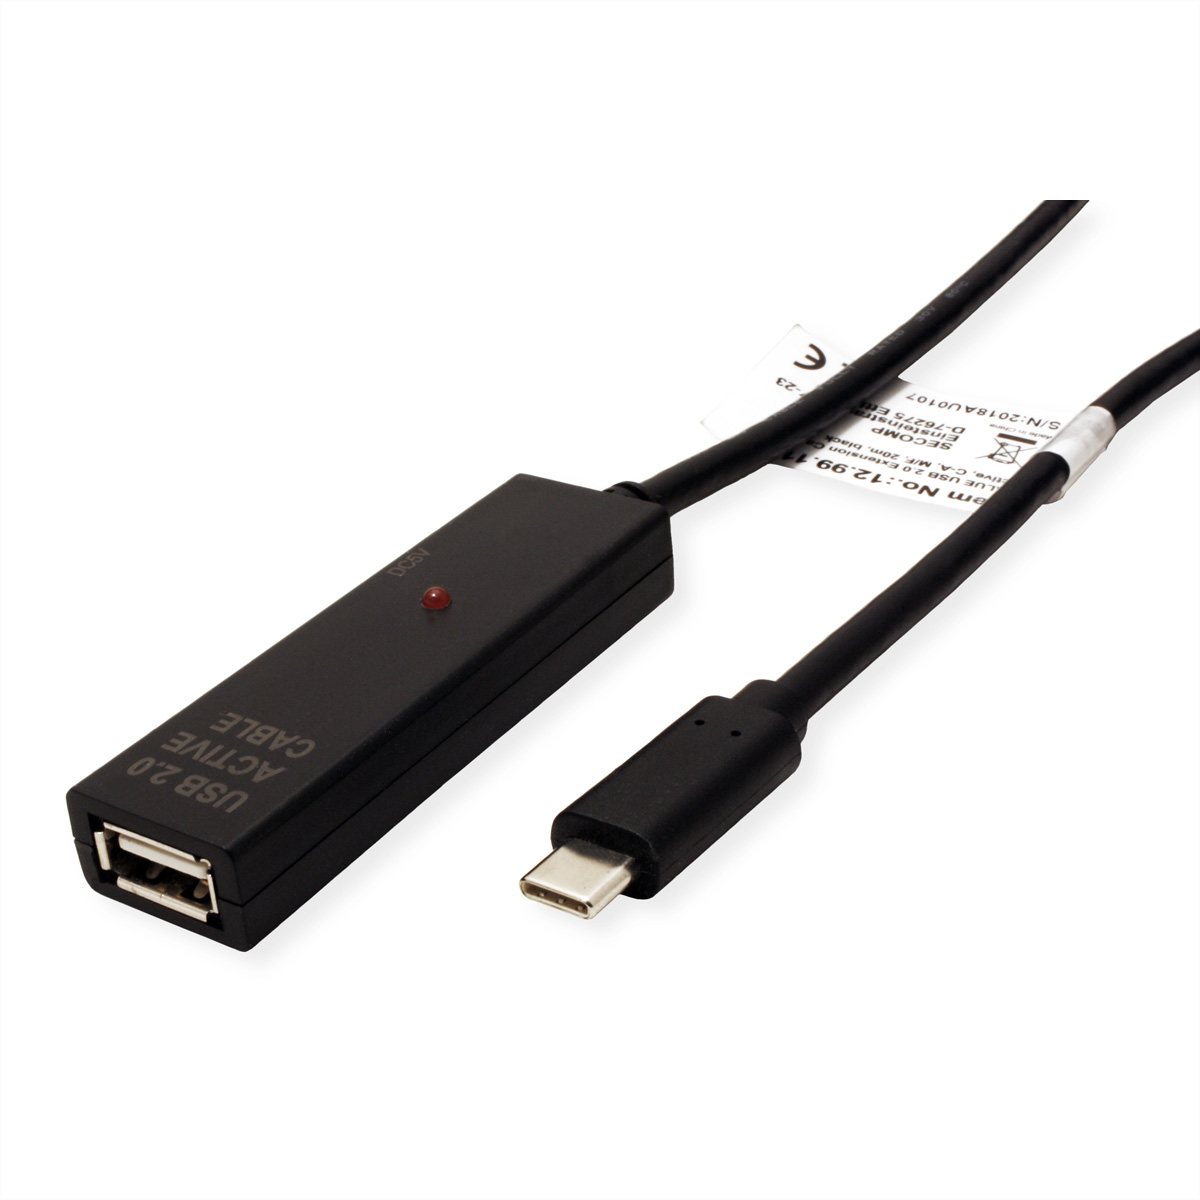 aktiv, A-C 2.0 VALUE Repeater, USB-Verlängerung USB Verlängerung, mit